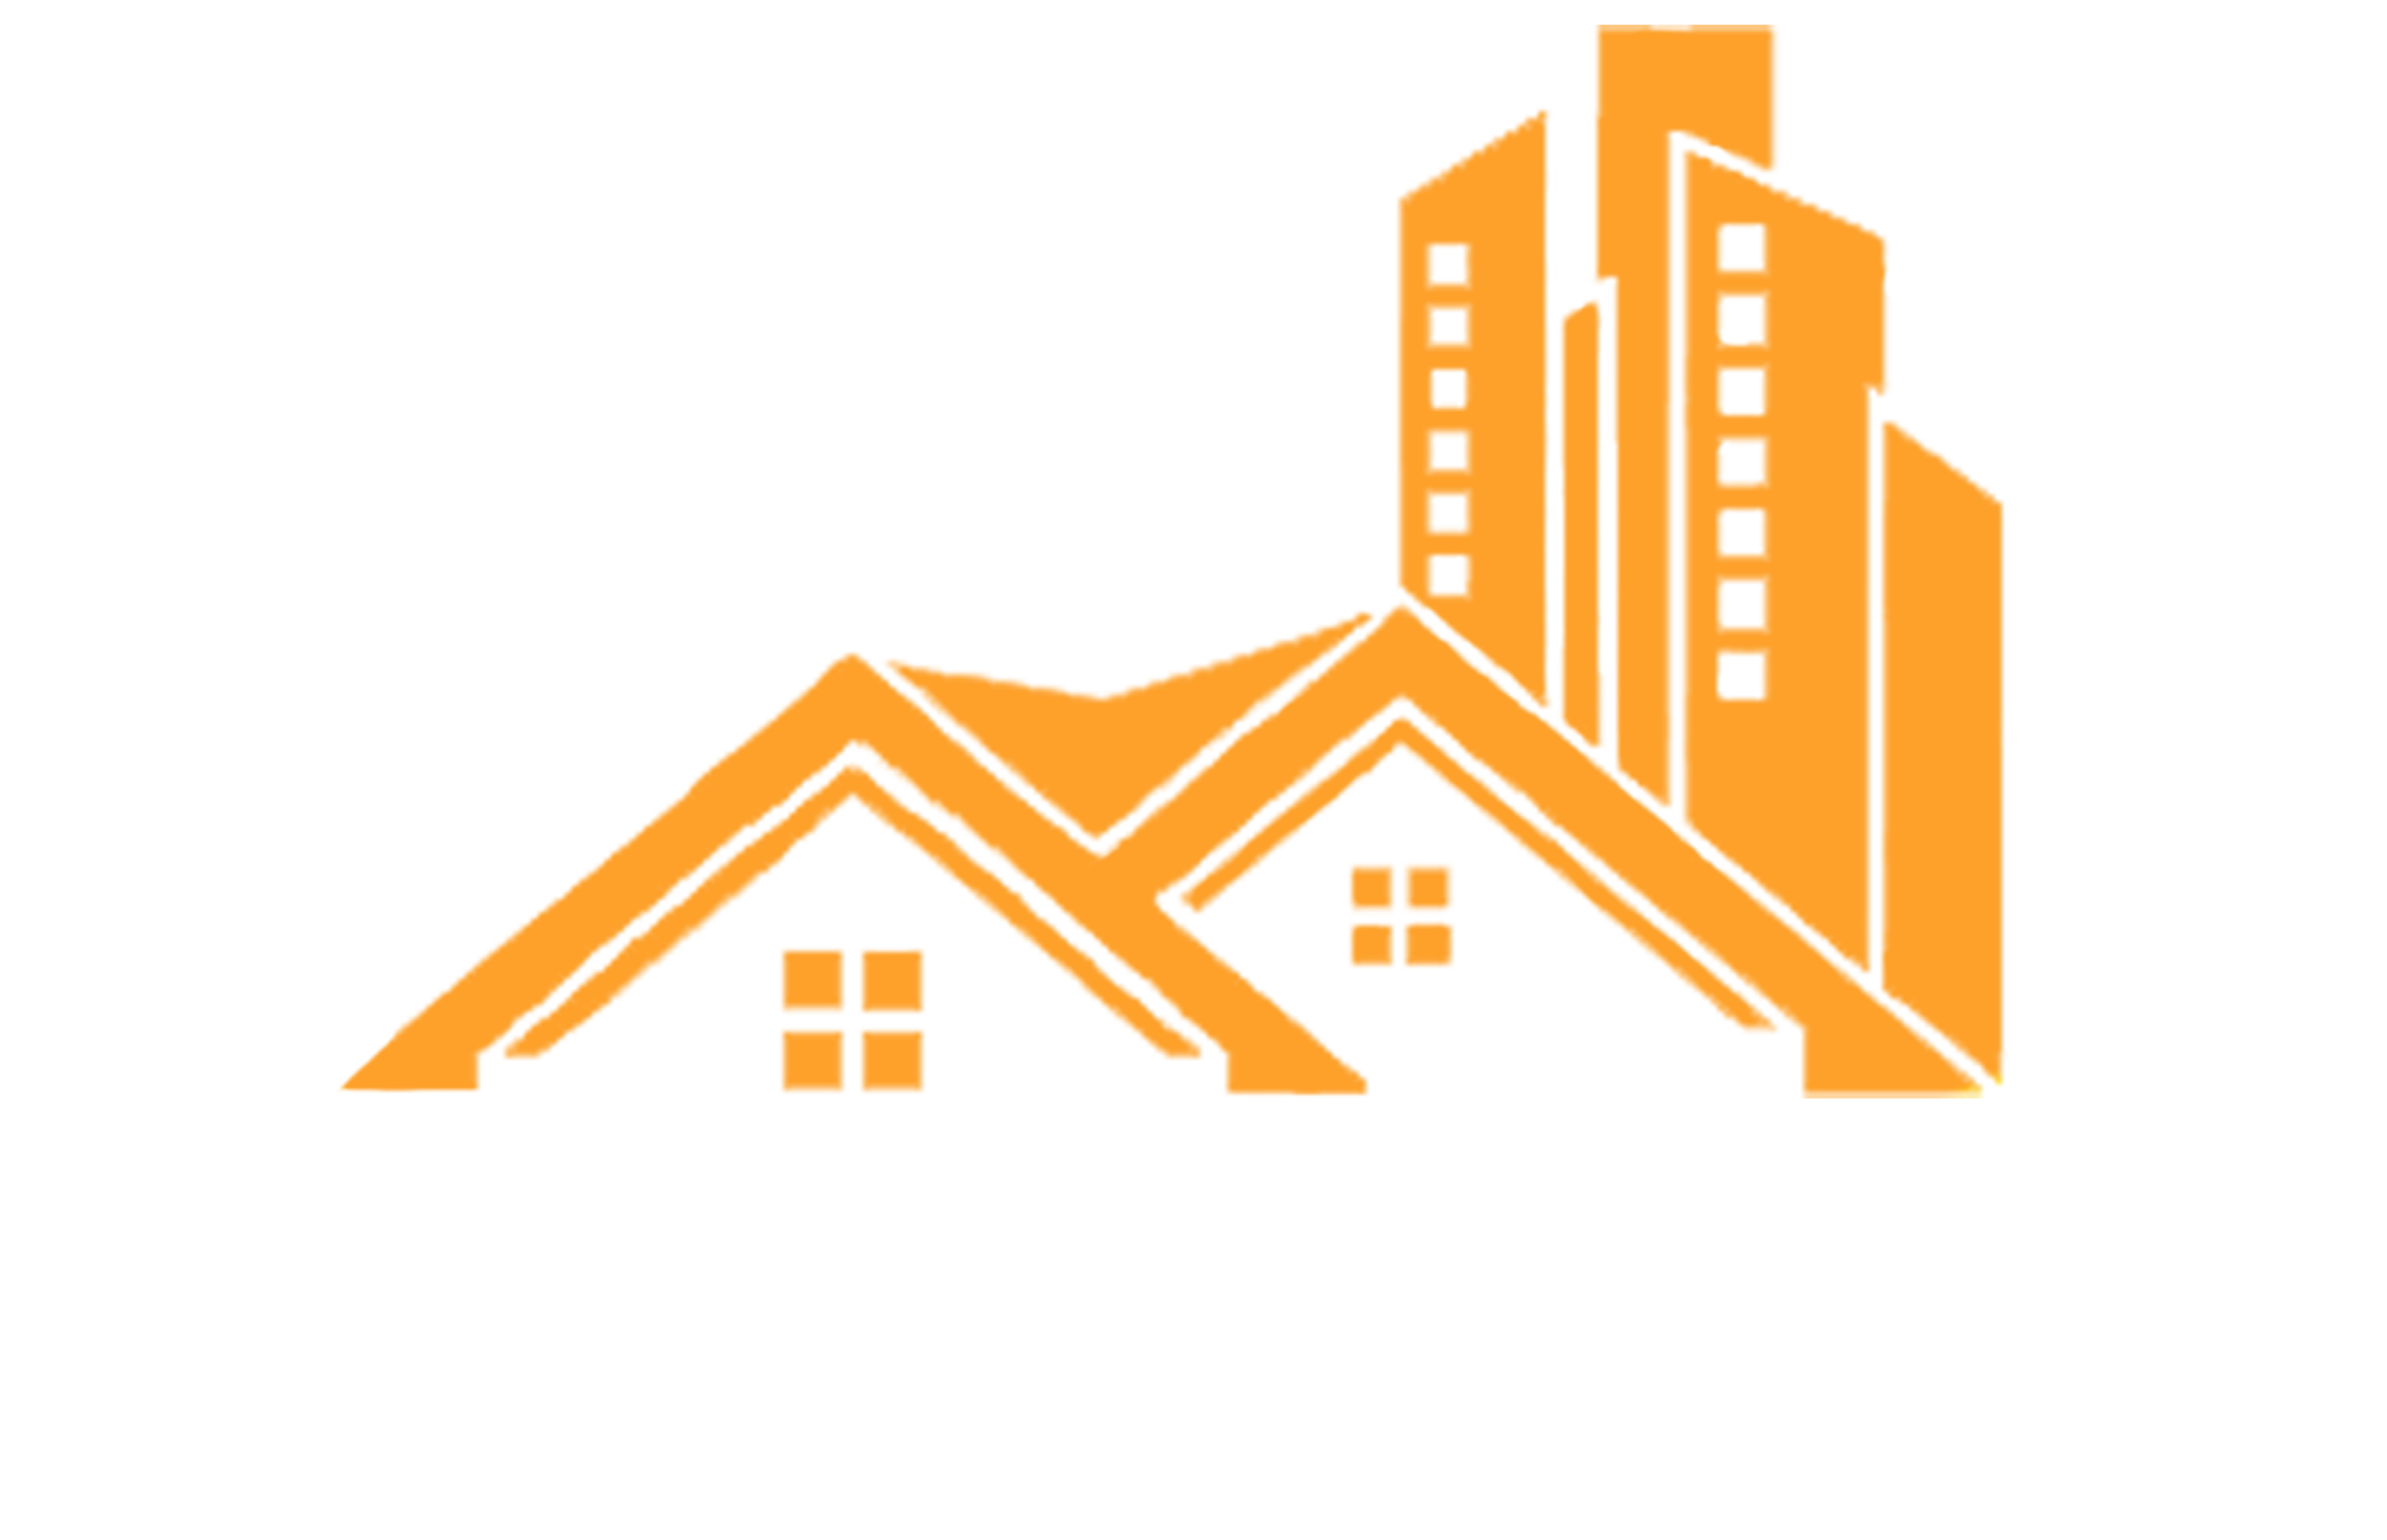 Becada Construction